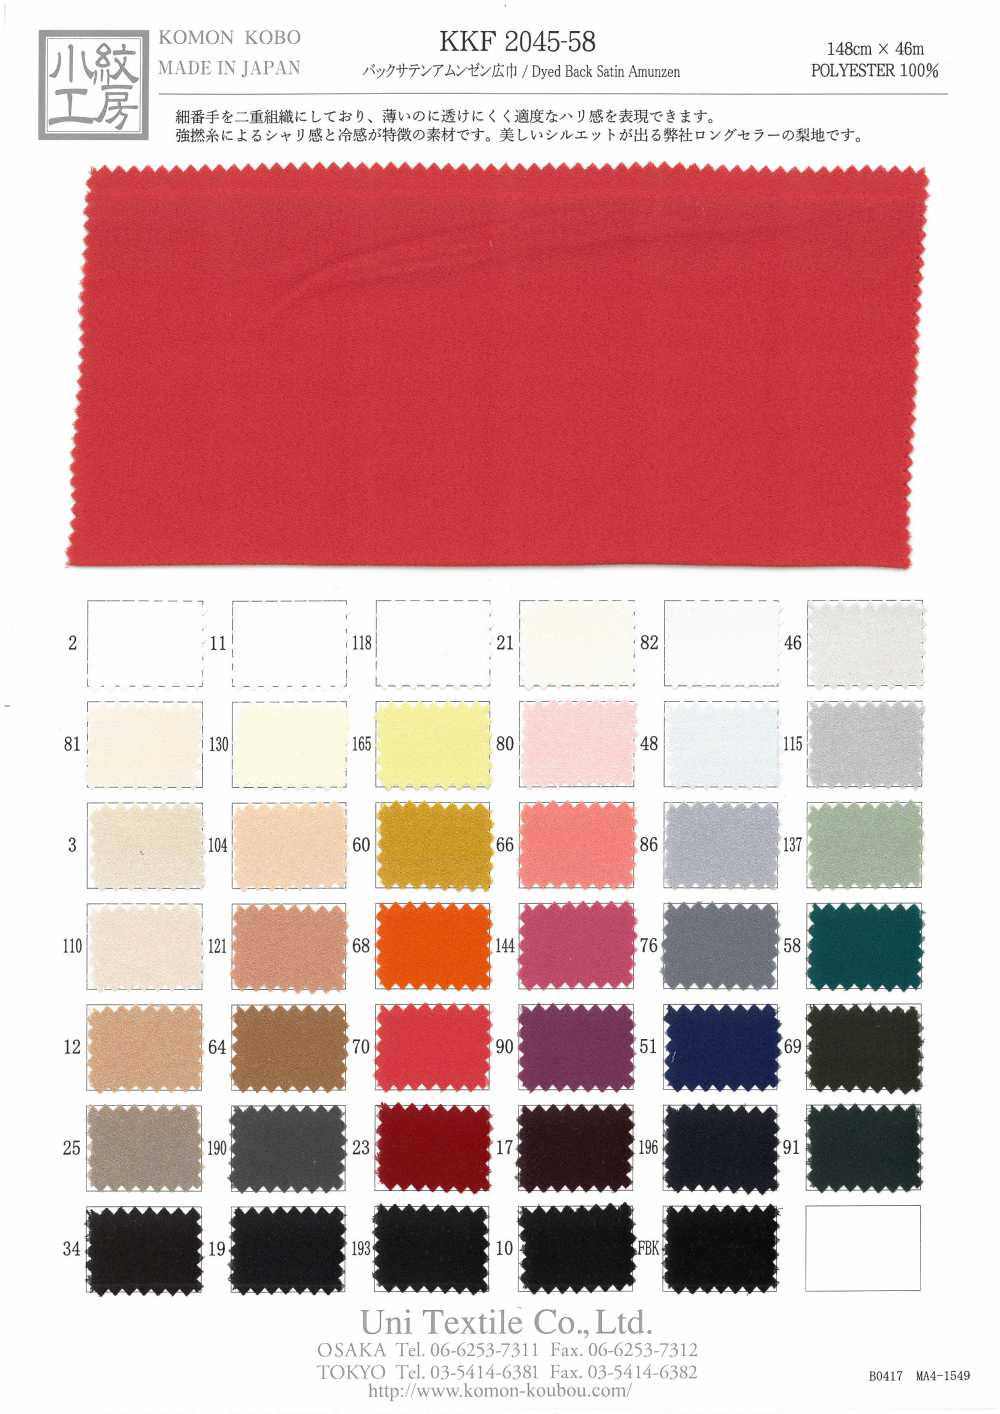 KKF2045-58 Largura Da Superfície De Rugosidade Traseira Acetinada[Têxtil / Tecido] Uni Textile